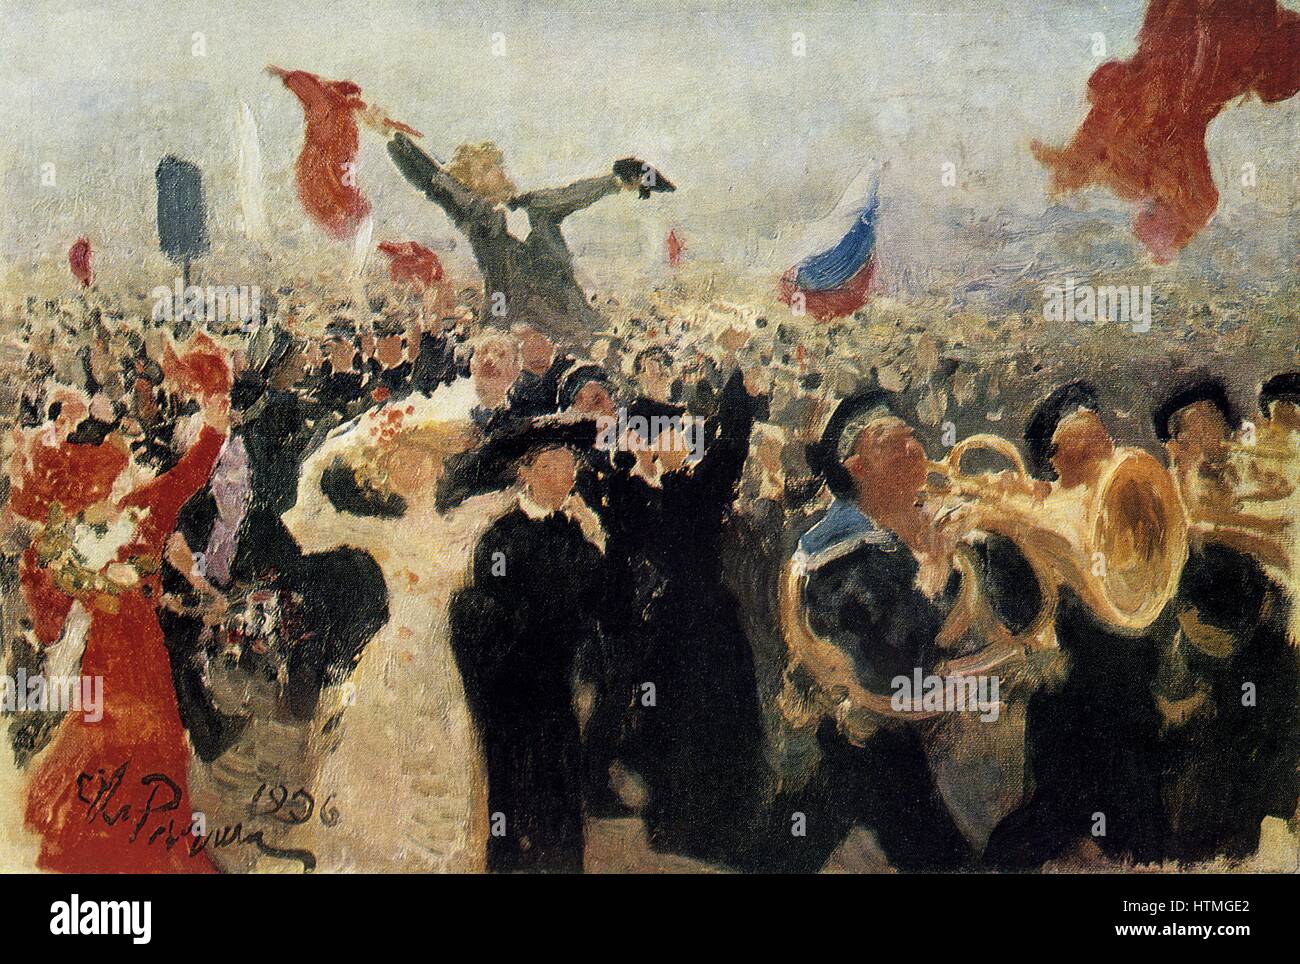 La dimostrazione del 17 ottobre 1905': reazione della folla a Nicholas II "manifesto sul miglioramento dello stato ordine" che ha promesso la libertà di religione, di parola, di riunione e di associazione e introduzione di universale suffragio maschile. L esultante mar Foto Stock